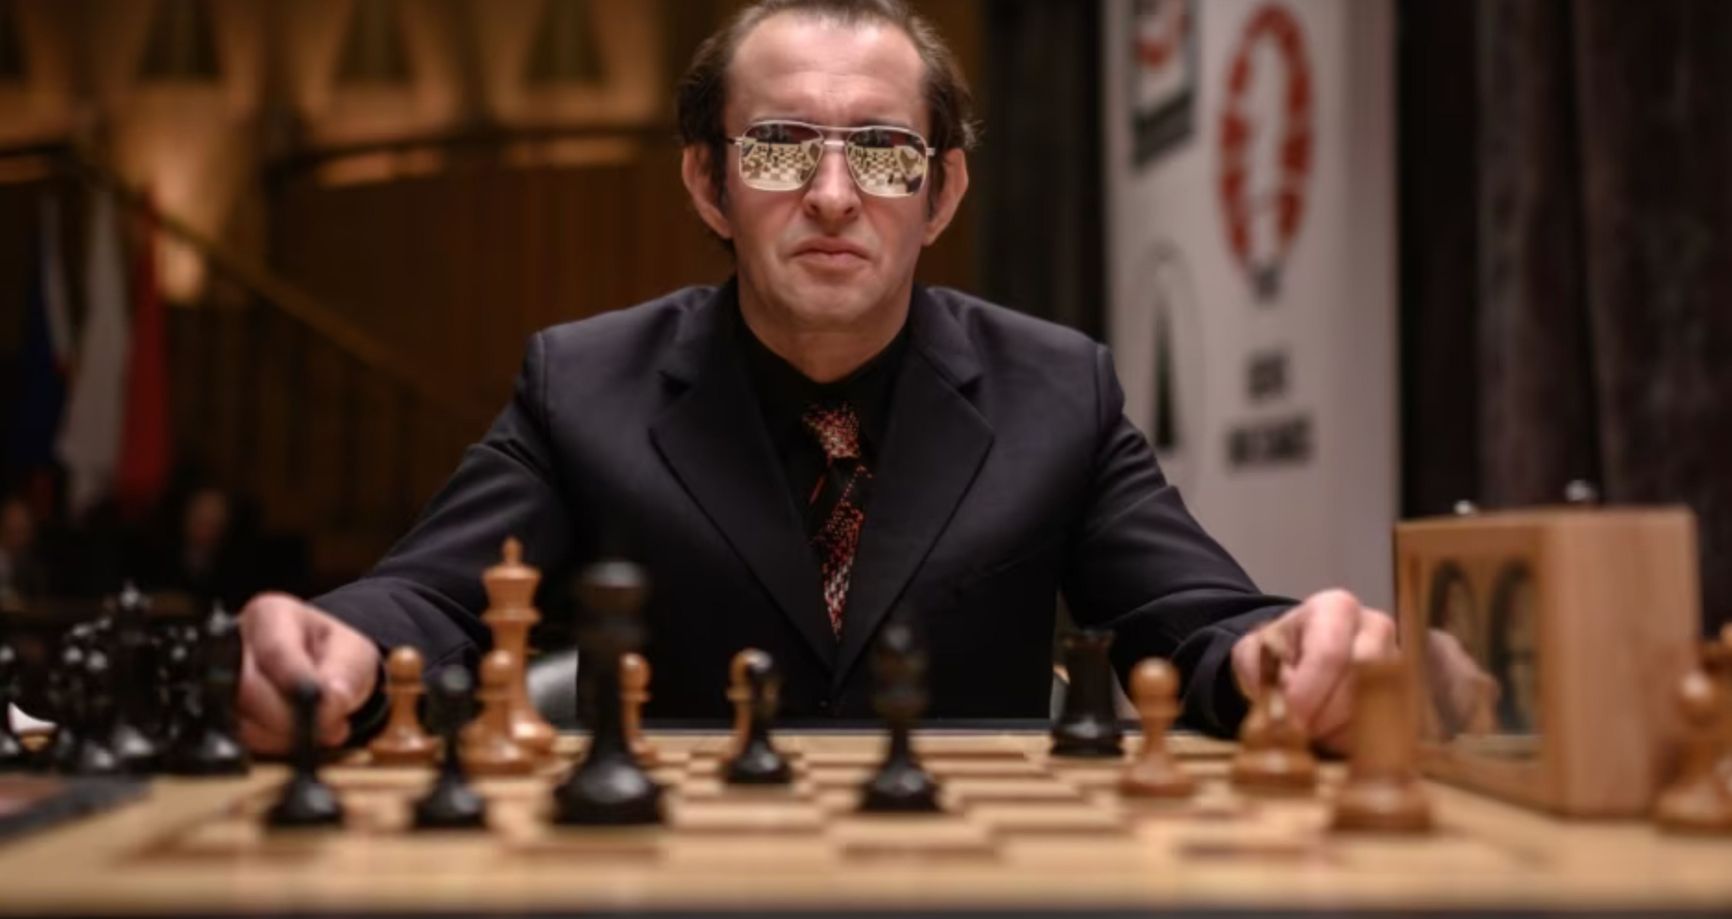 Konstantin Khabensky playing Viktor Korchnoi, a shot from the movie “World Champion” 